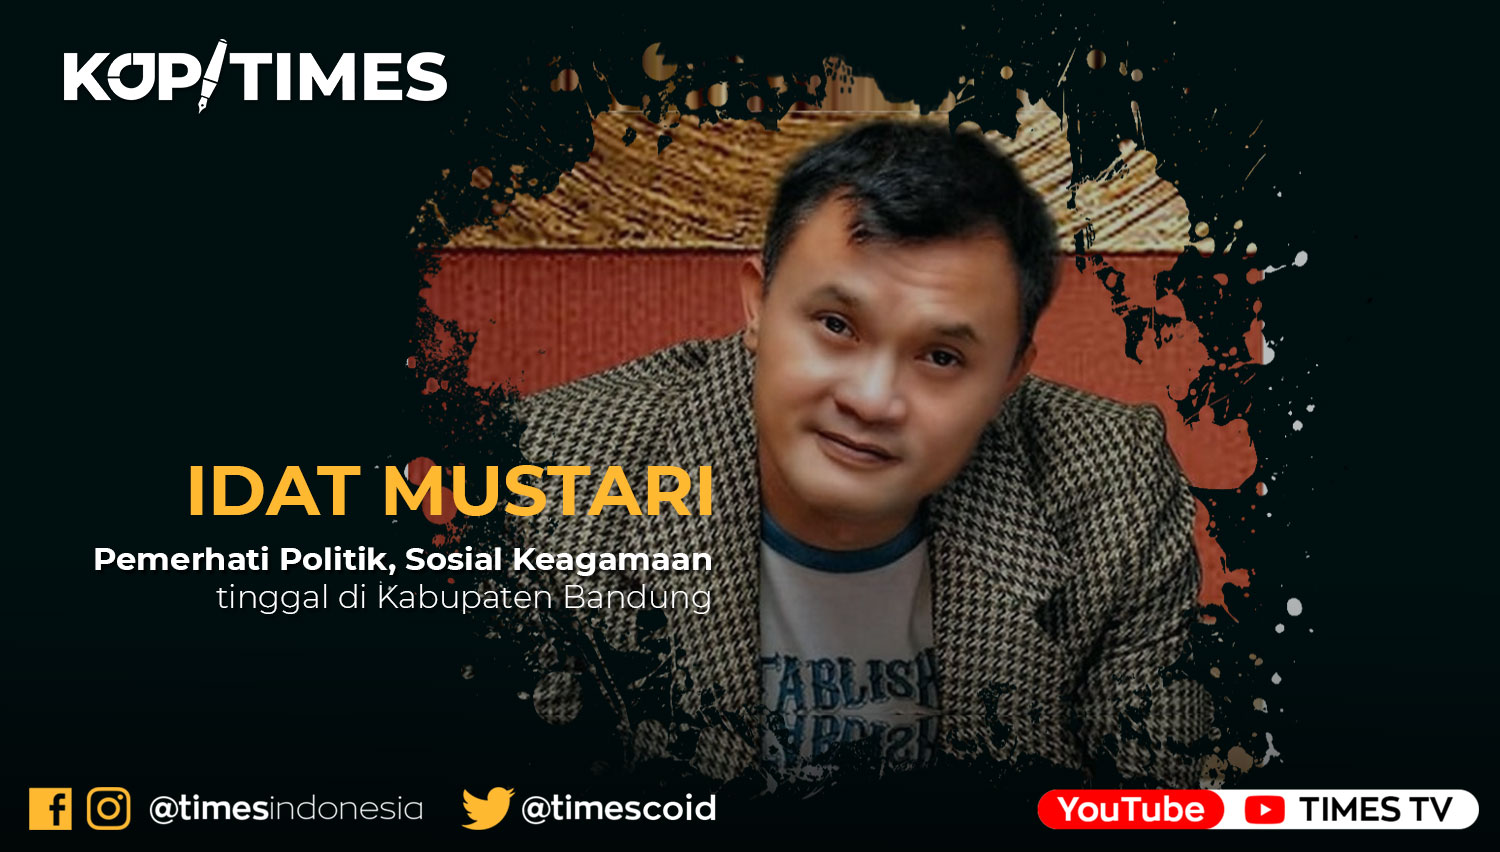 Idat Mustari, Pemerhati Politik, Sosial Keagamaan, tinggal di Kabupaten Bandung